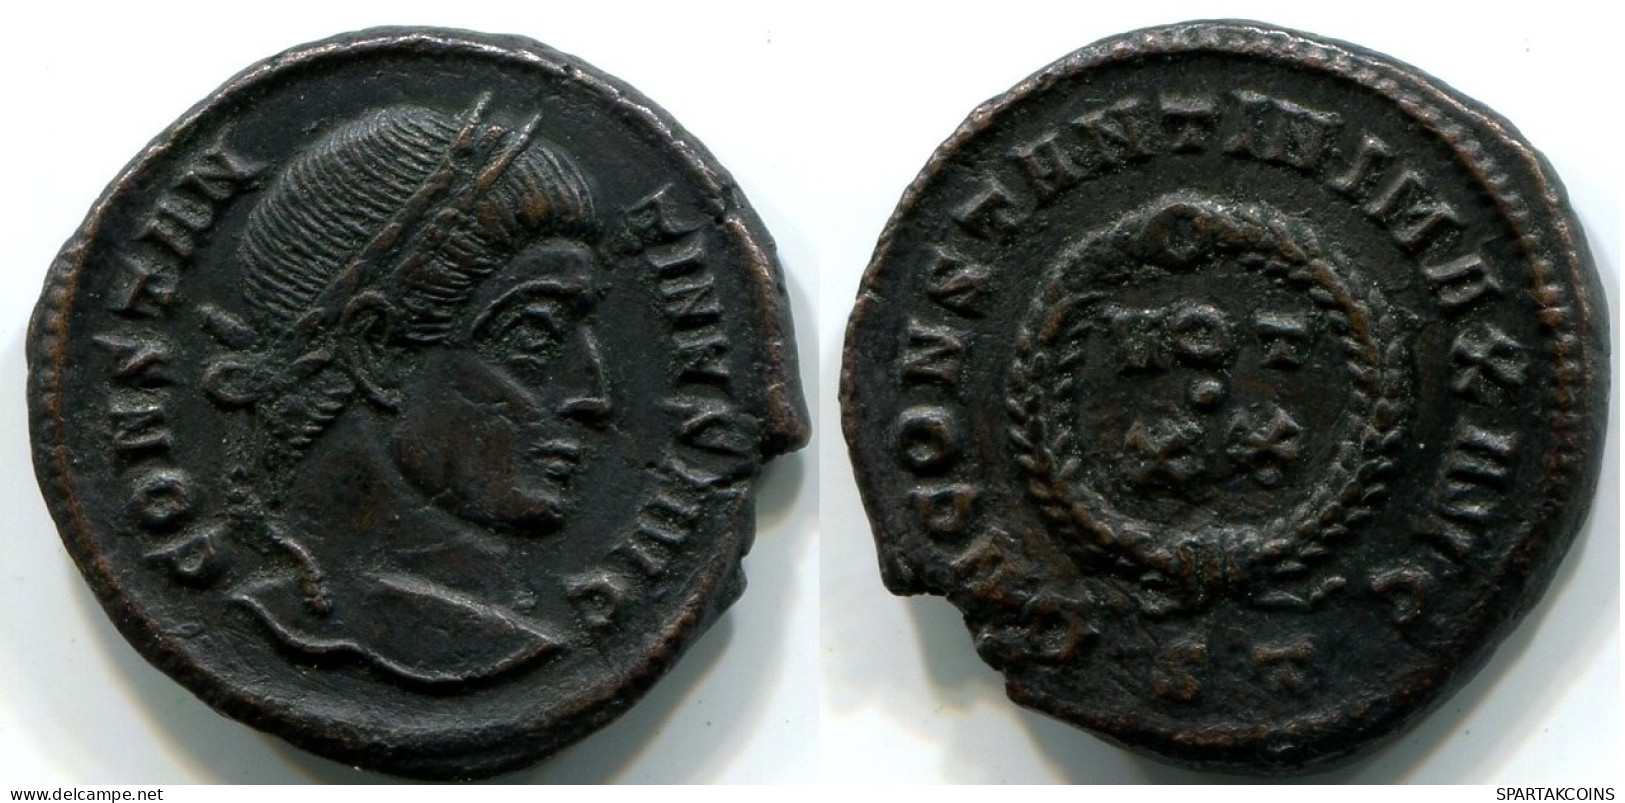 CONSTANTINE I Ticinum Mint ST AD 320-321 D N CONSTANTINI MAX AVG #ANC12447.16.E.A - L'Empire Chrétien (307 à 363)